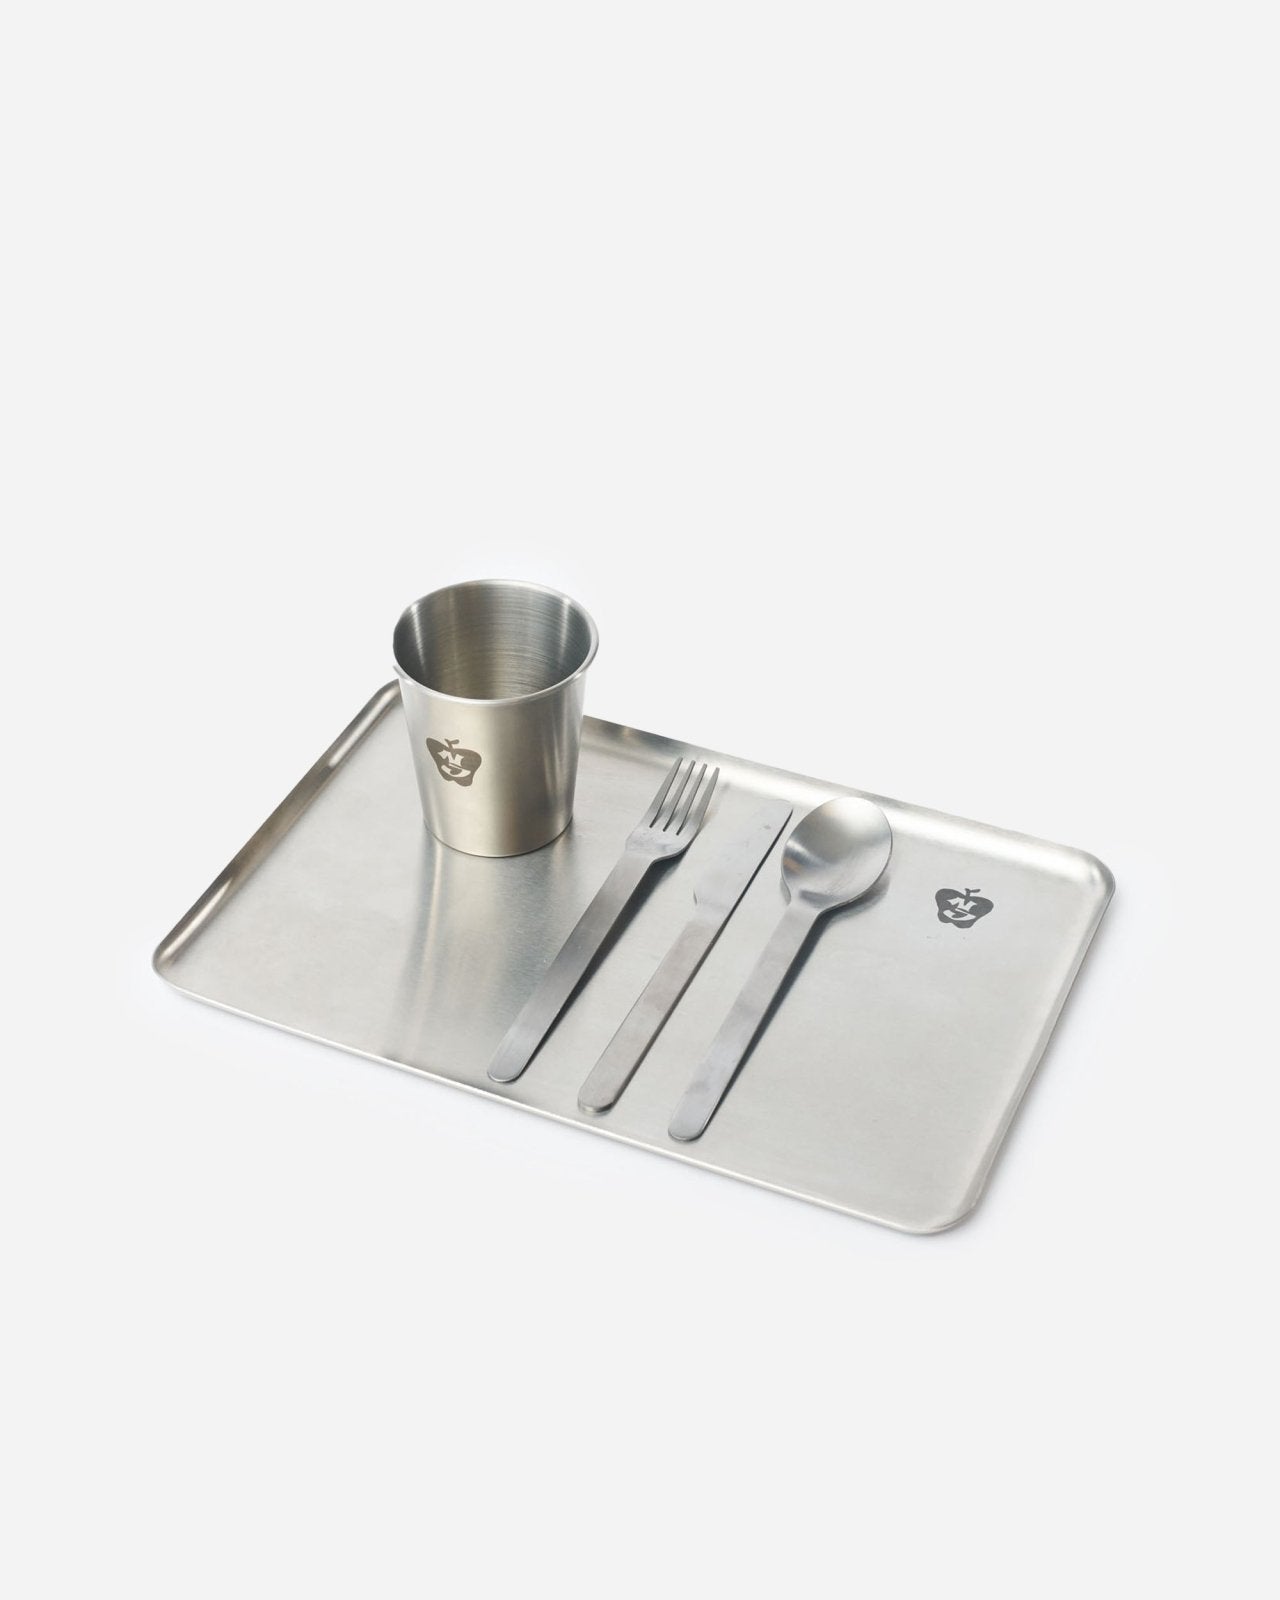 Steel Plate - Stainless steel serving tray set tableware by NIKO JUNE